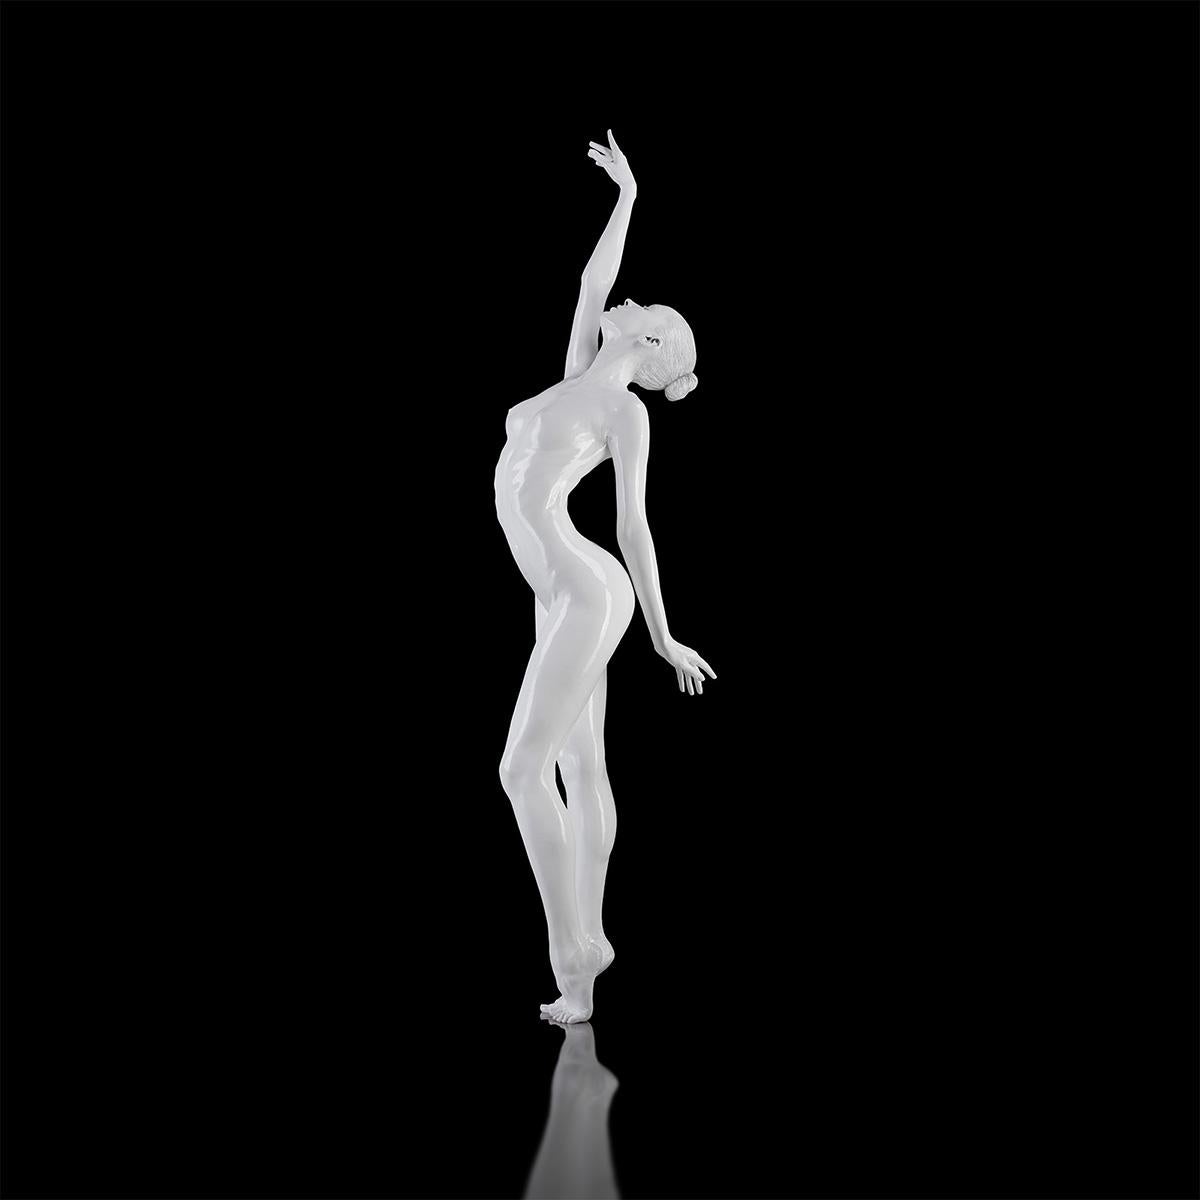 „Ohne Titel (No 57)“ Fotografie Ed. of 28 36" x 36" in von Yevgeniy Repiashenko

Jahr, in dem das Foto aufgenommen wurde: 2017

Dieses Kunstwerk ist Teil der Serie "Spirit".
Das Bild zeigt eine eingefrorene Bewegung einer professionellen Ballerina.